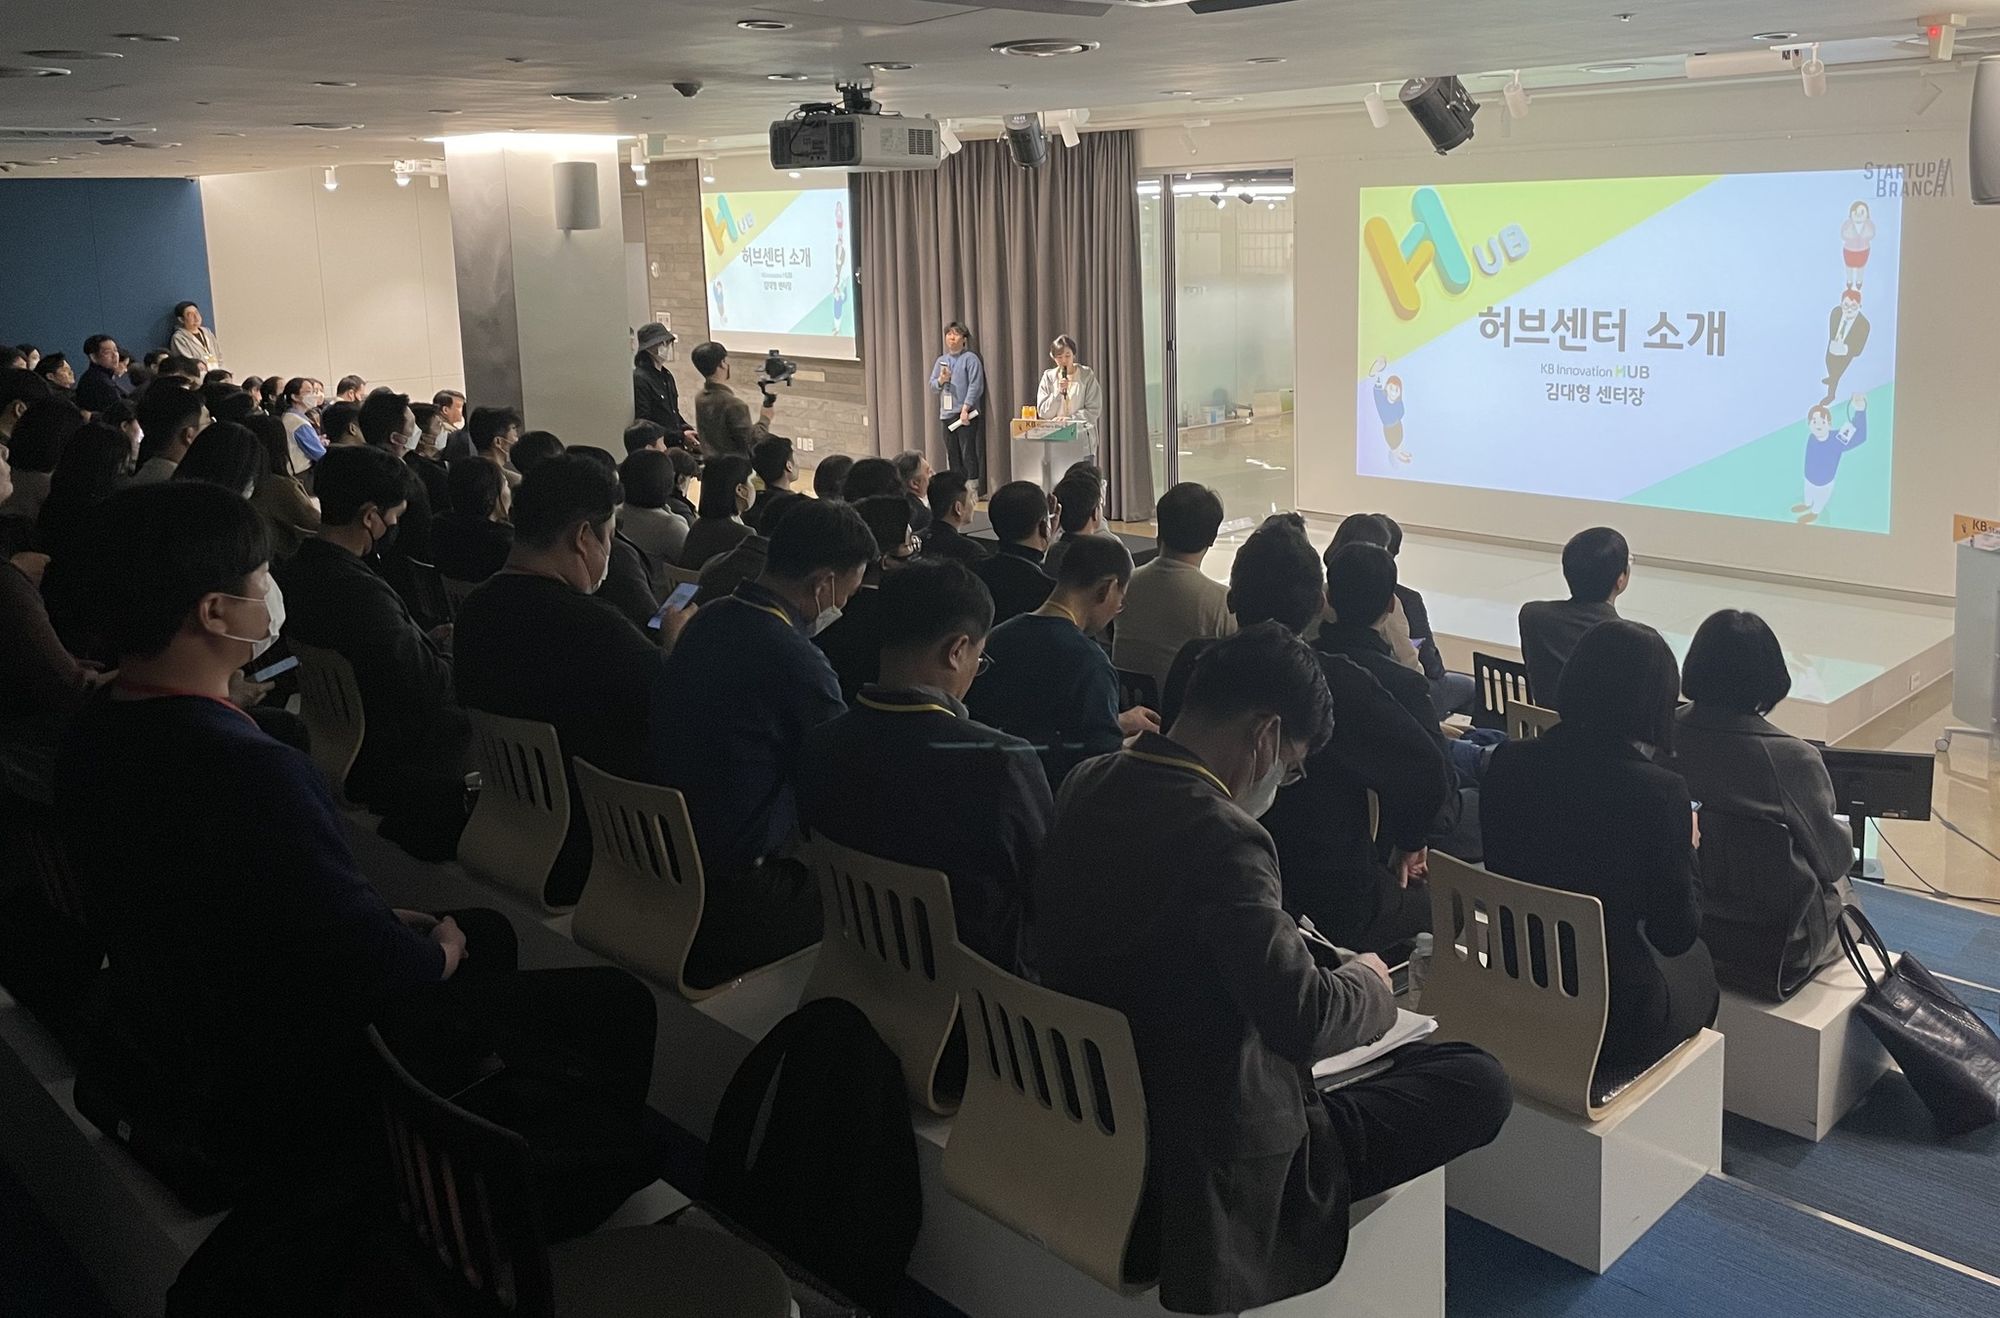 스타트업 네트워킹 행사 ‘KB스타터스 데이’ 개최